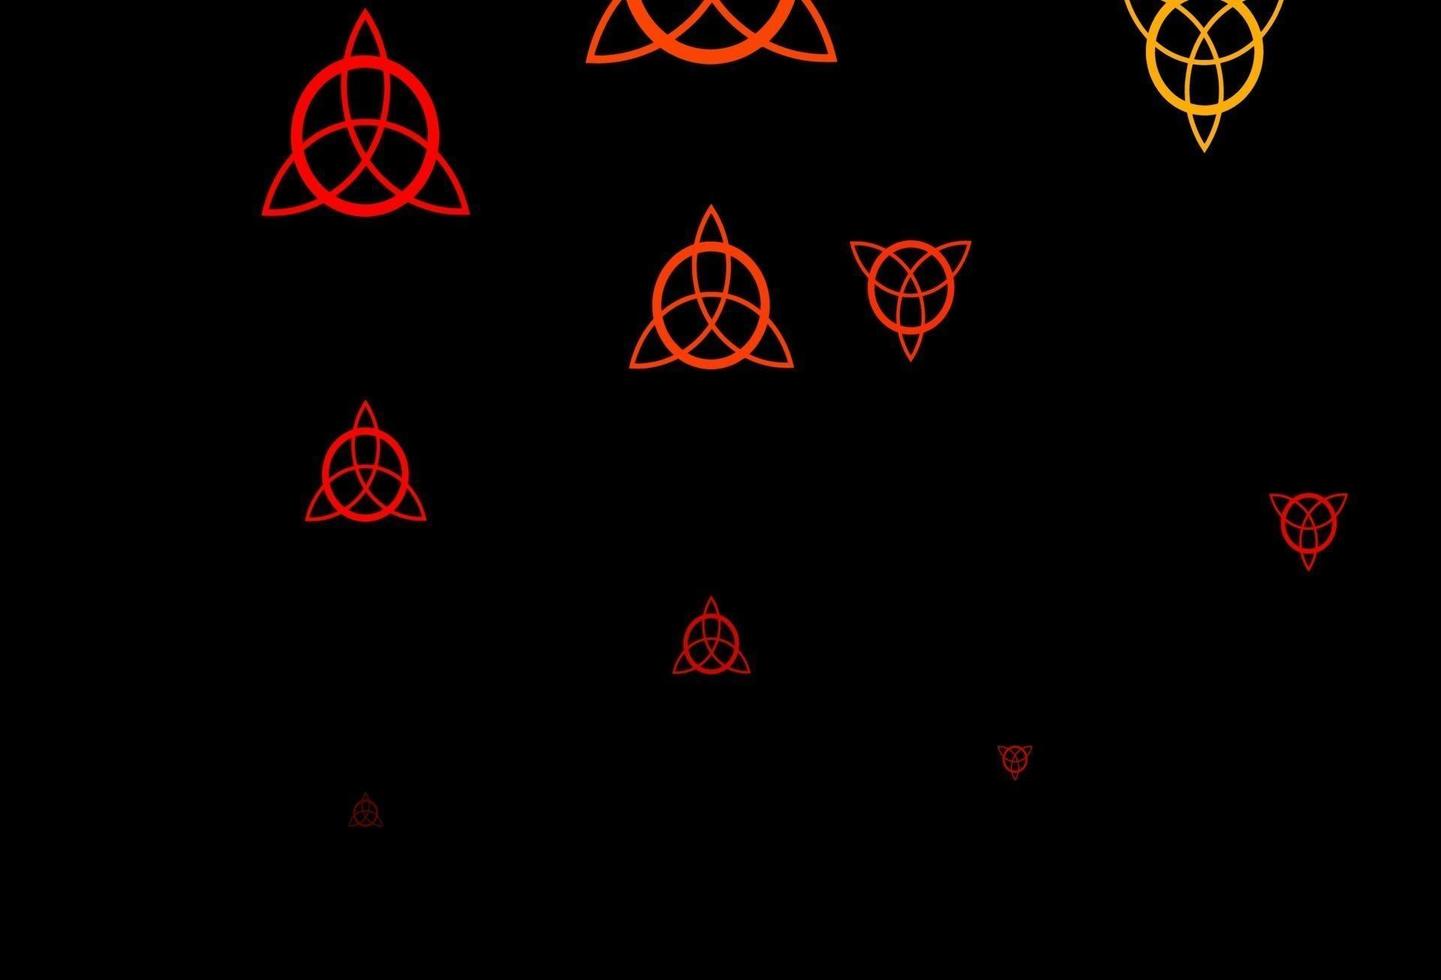 Telón de fondo de vector rojo oscuro con símbolos de misterio.